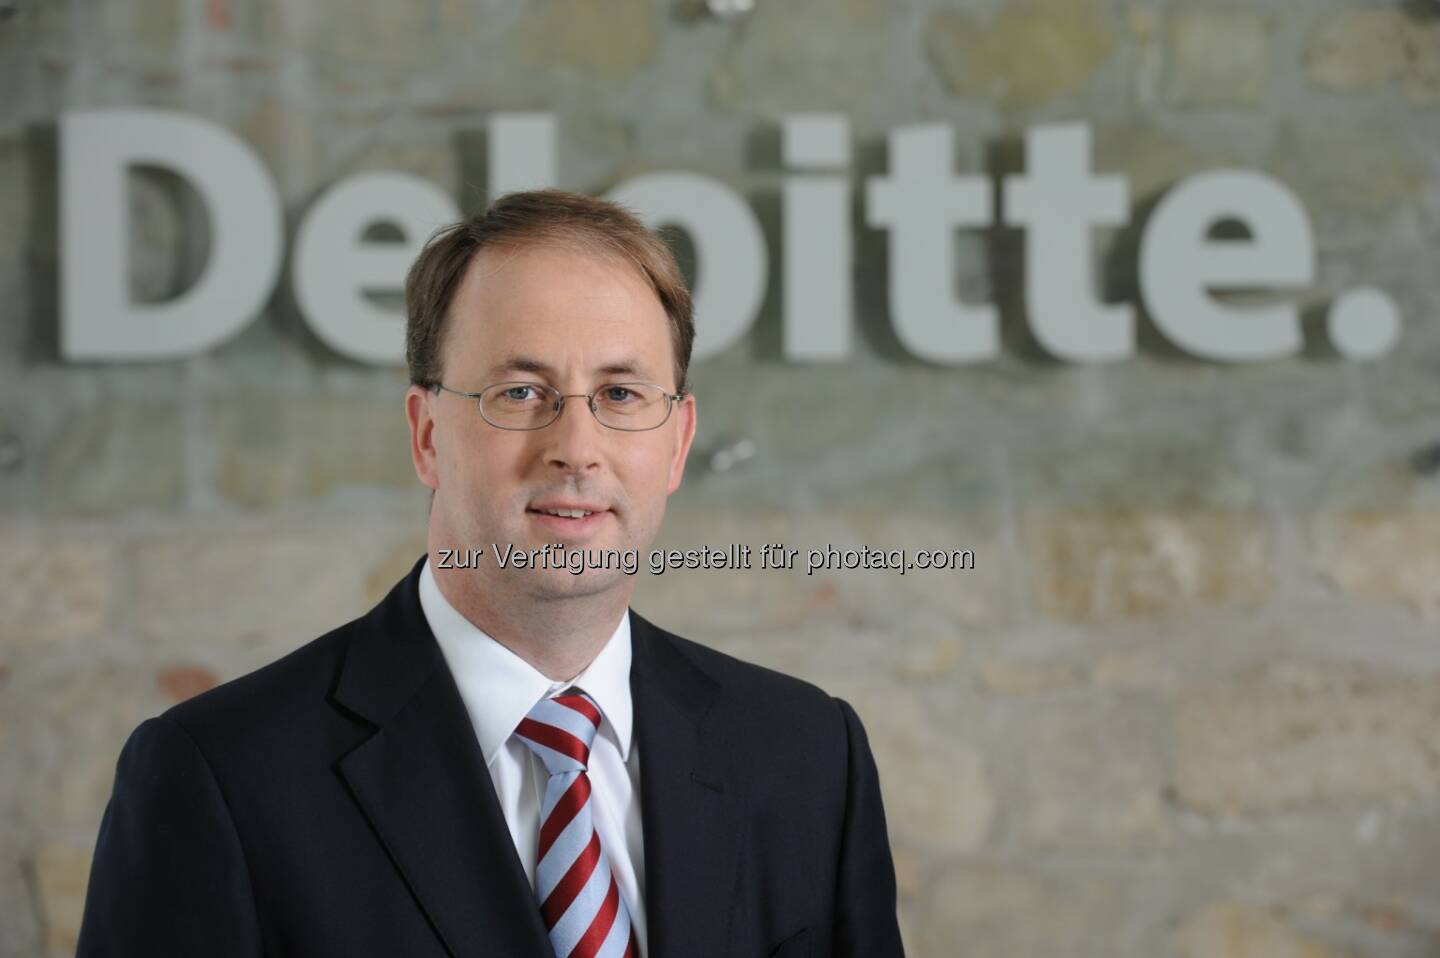 Alexander Ruzicka, Partner, Deloitte Enterprise Risk Services Österreich freut sich darüber, dass Deloitte zu den weltweit führenden Beratungsunternehmen für Cyber Security zählt. Zu diesem Schluss kommt Kennedy Consulting Research & Advisory. (Bild: Deloitte)